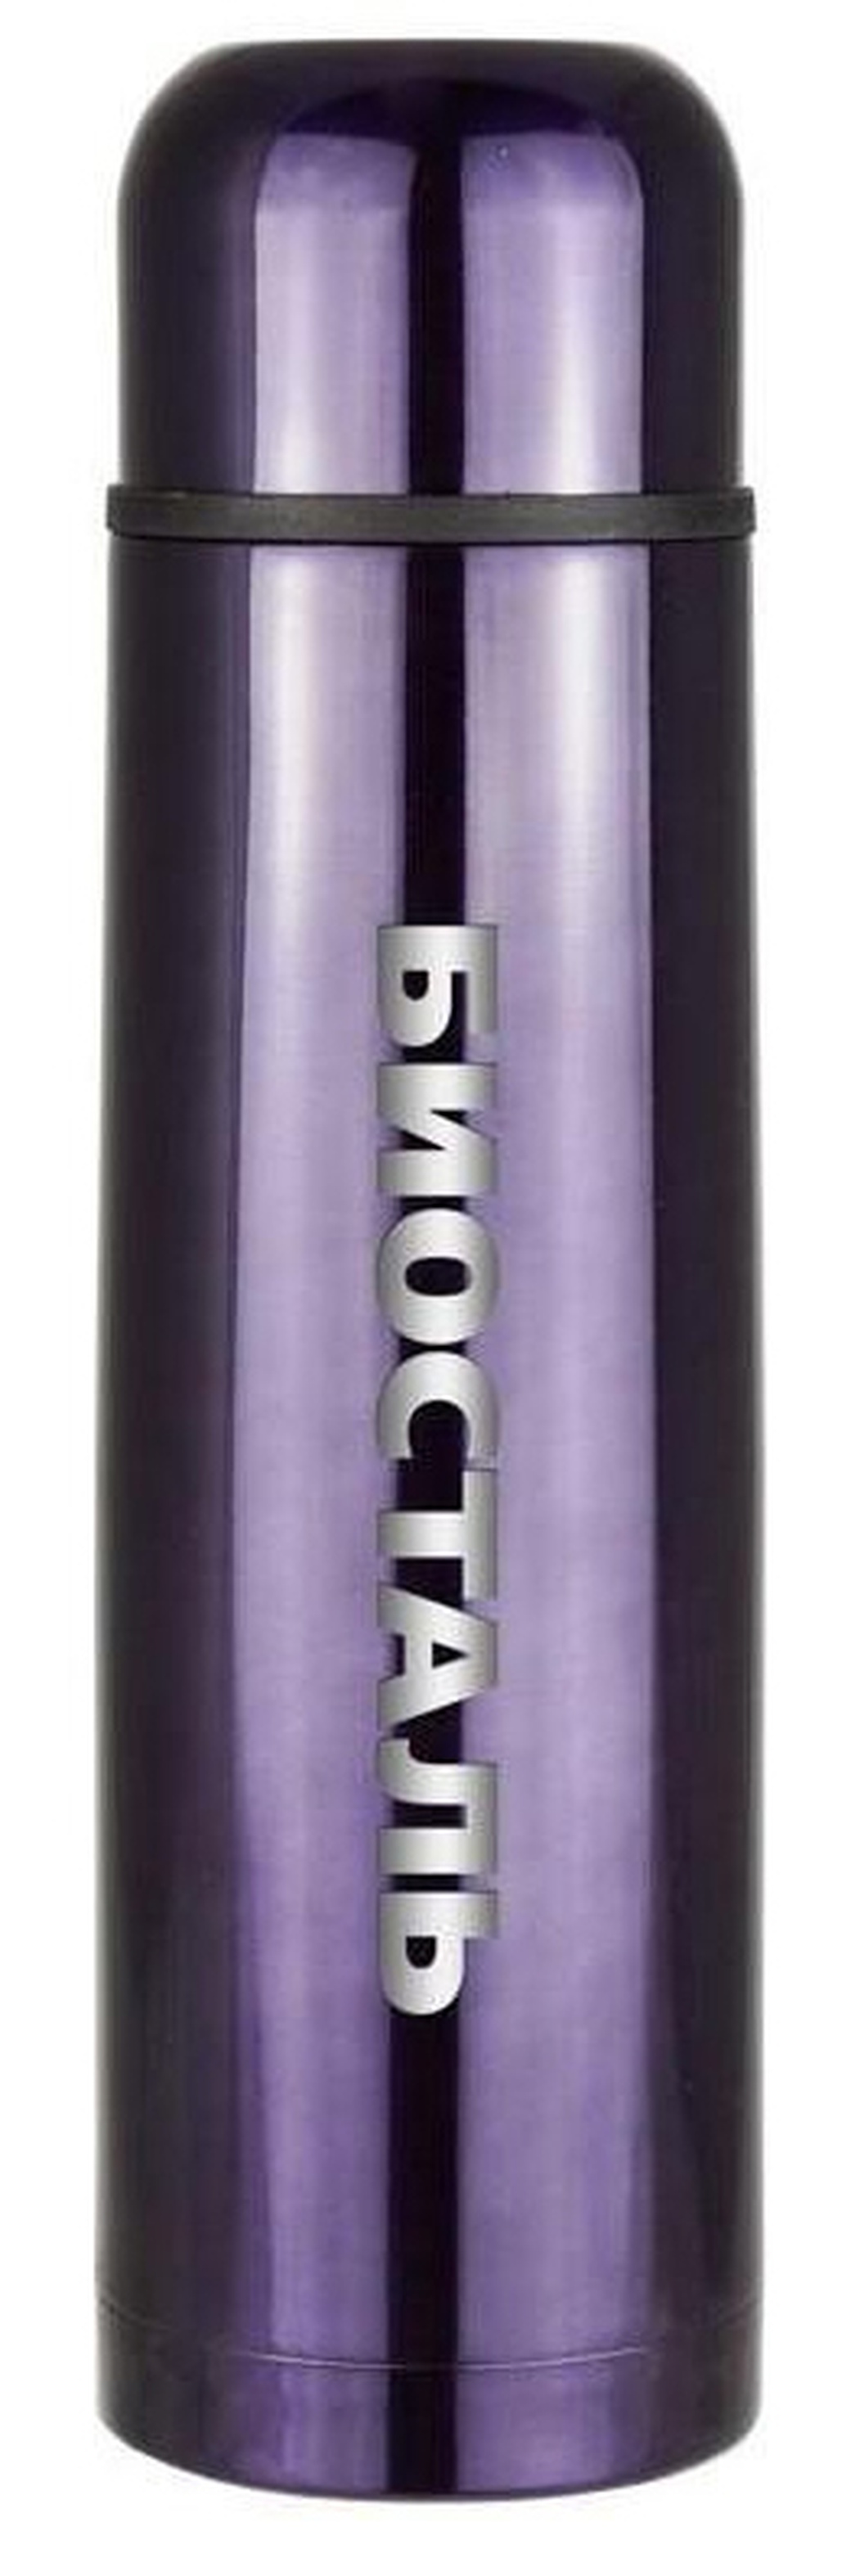 Термос Biostal (0,75 литра), фиолетовый фото